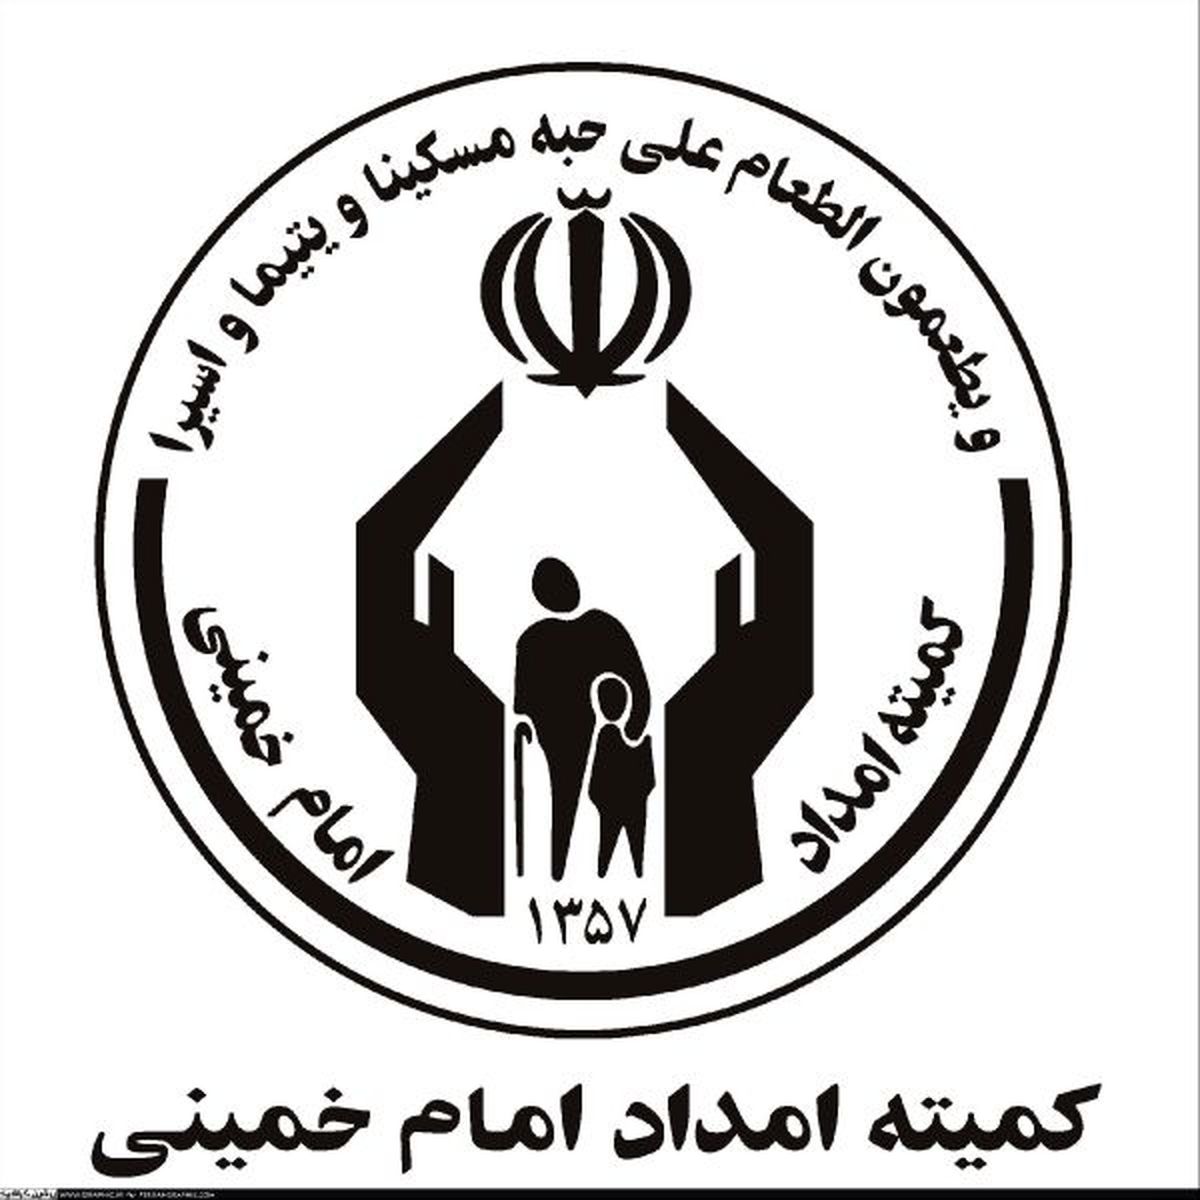 مدیرکل کمیته امداد استان تهران خبر داد: اجرای طرح شجره طیبه در تهران آغاز شد